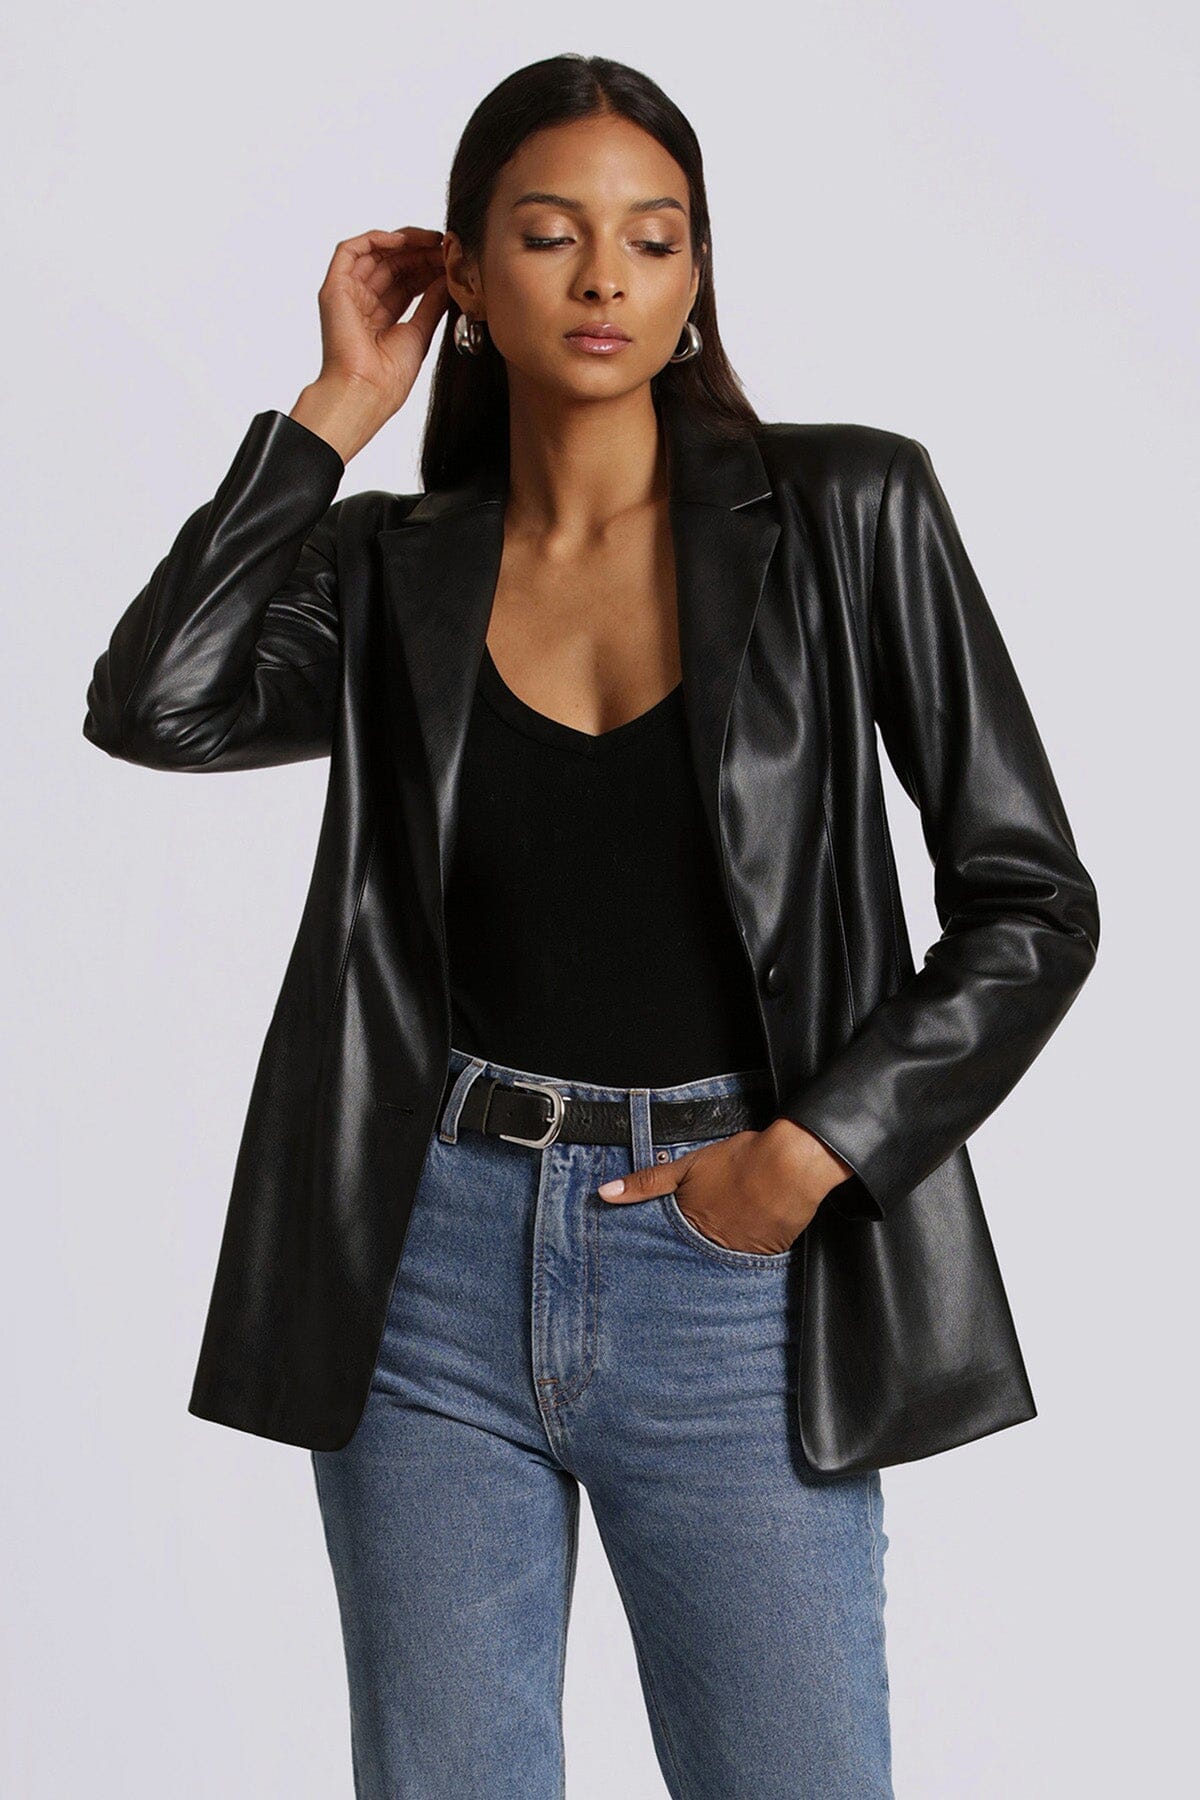 faux ever leather sculpted blazer jacket coat black - women's figure flattering work appropriate blazers outerwear 